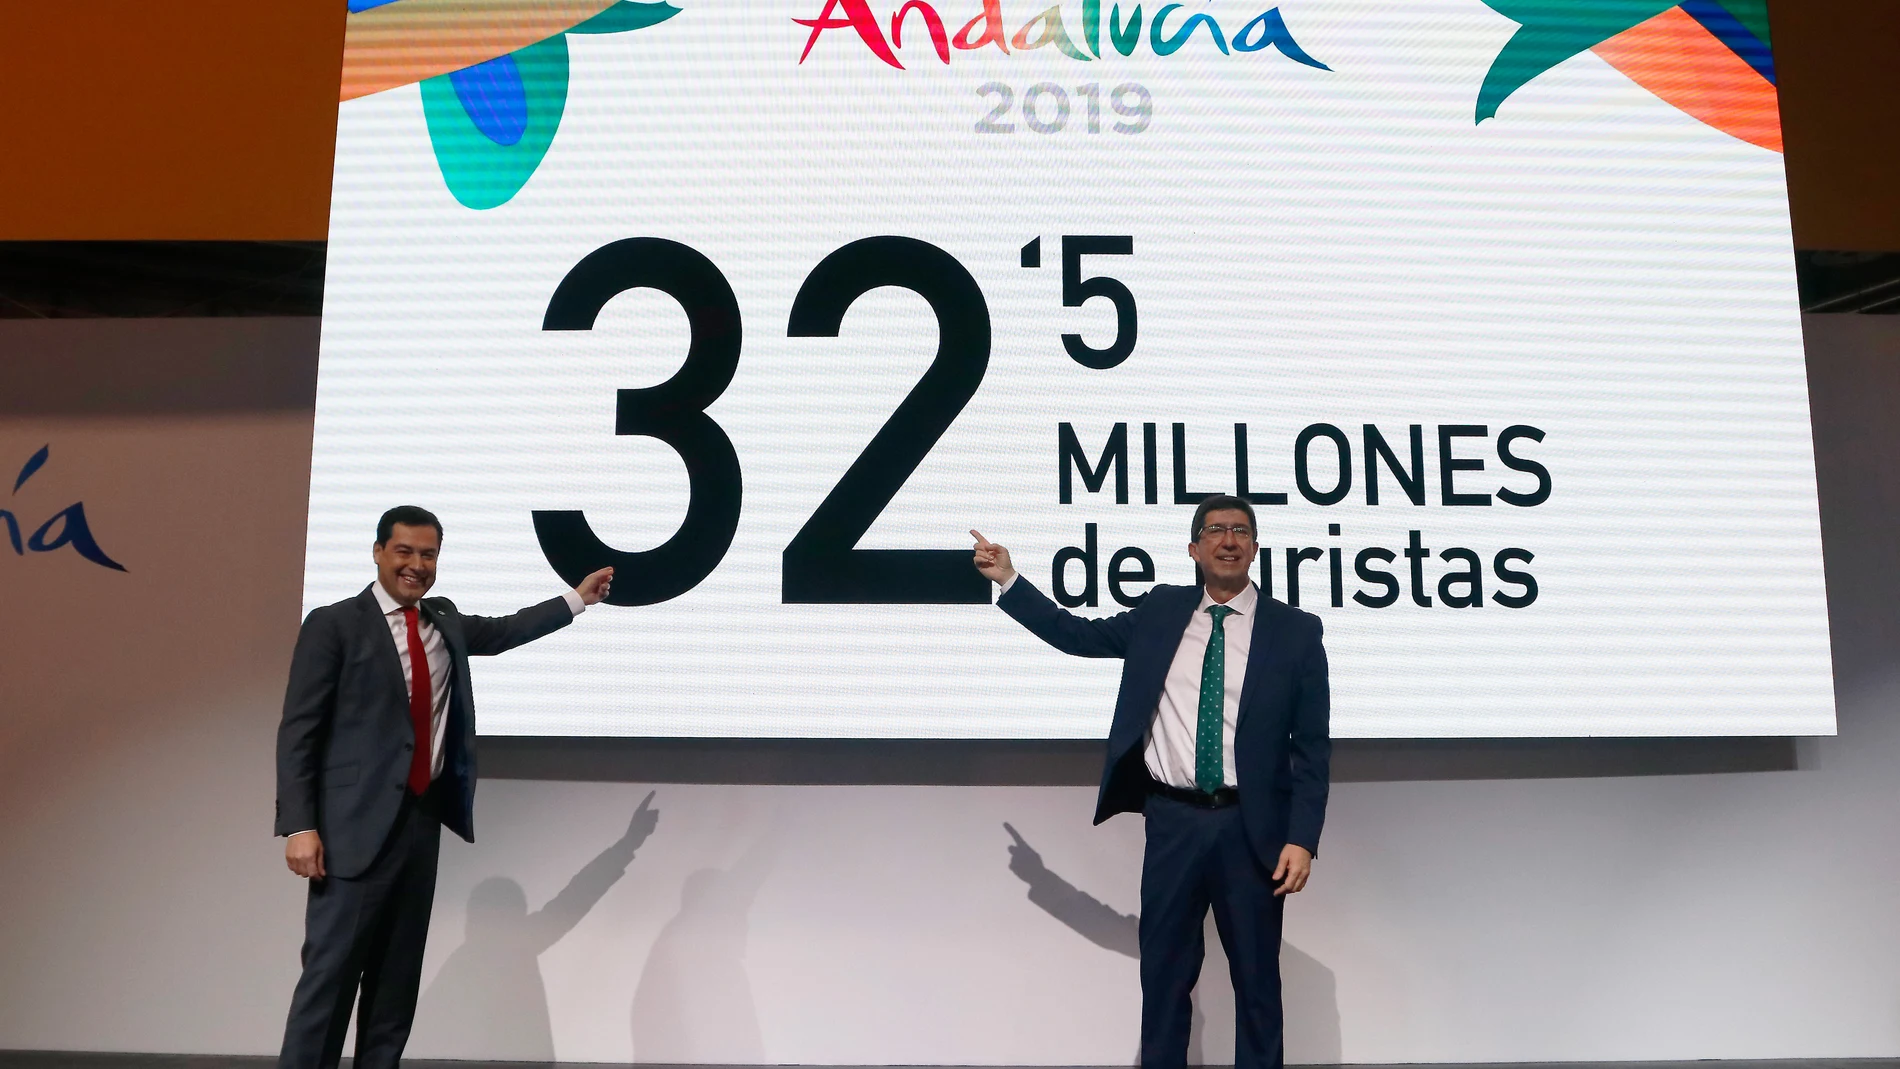 El presidente de la Junta de Andalucía, Juanma Moreno, junto al vicepresidente de la Junta de Andalucía, Juan Marín, durante la visita al pabellón de Andalucía de FITUR 2020, en Madrid